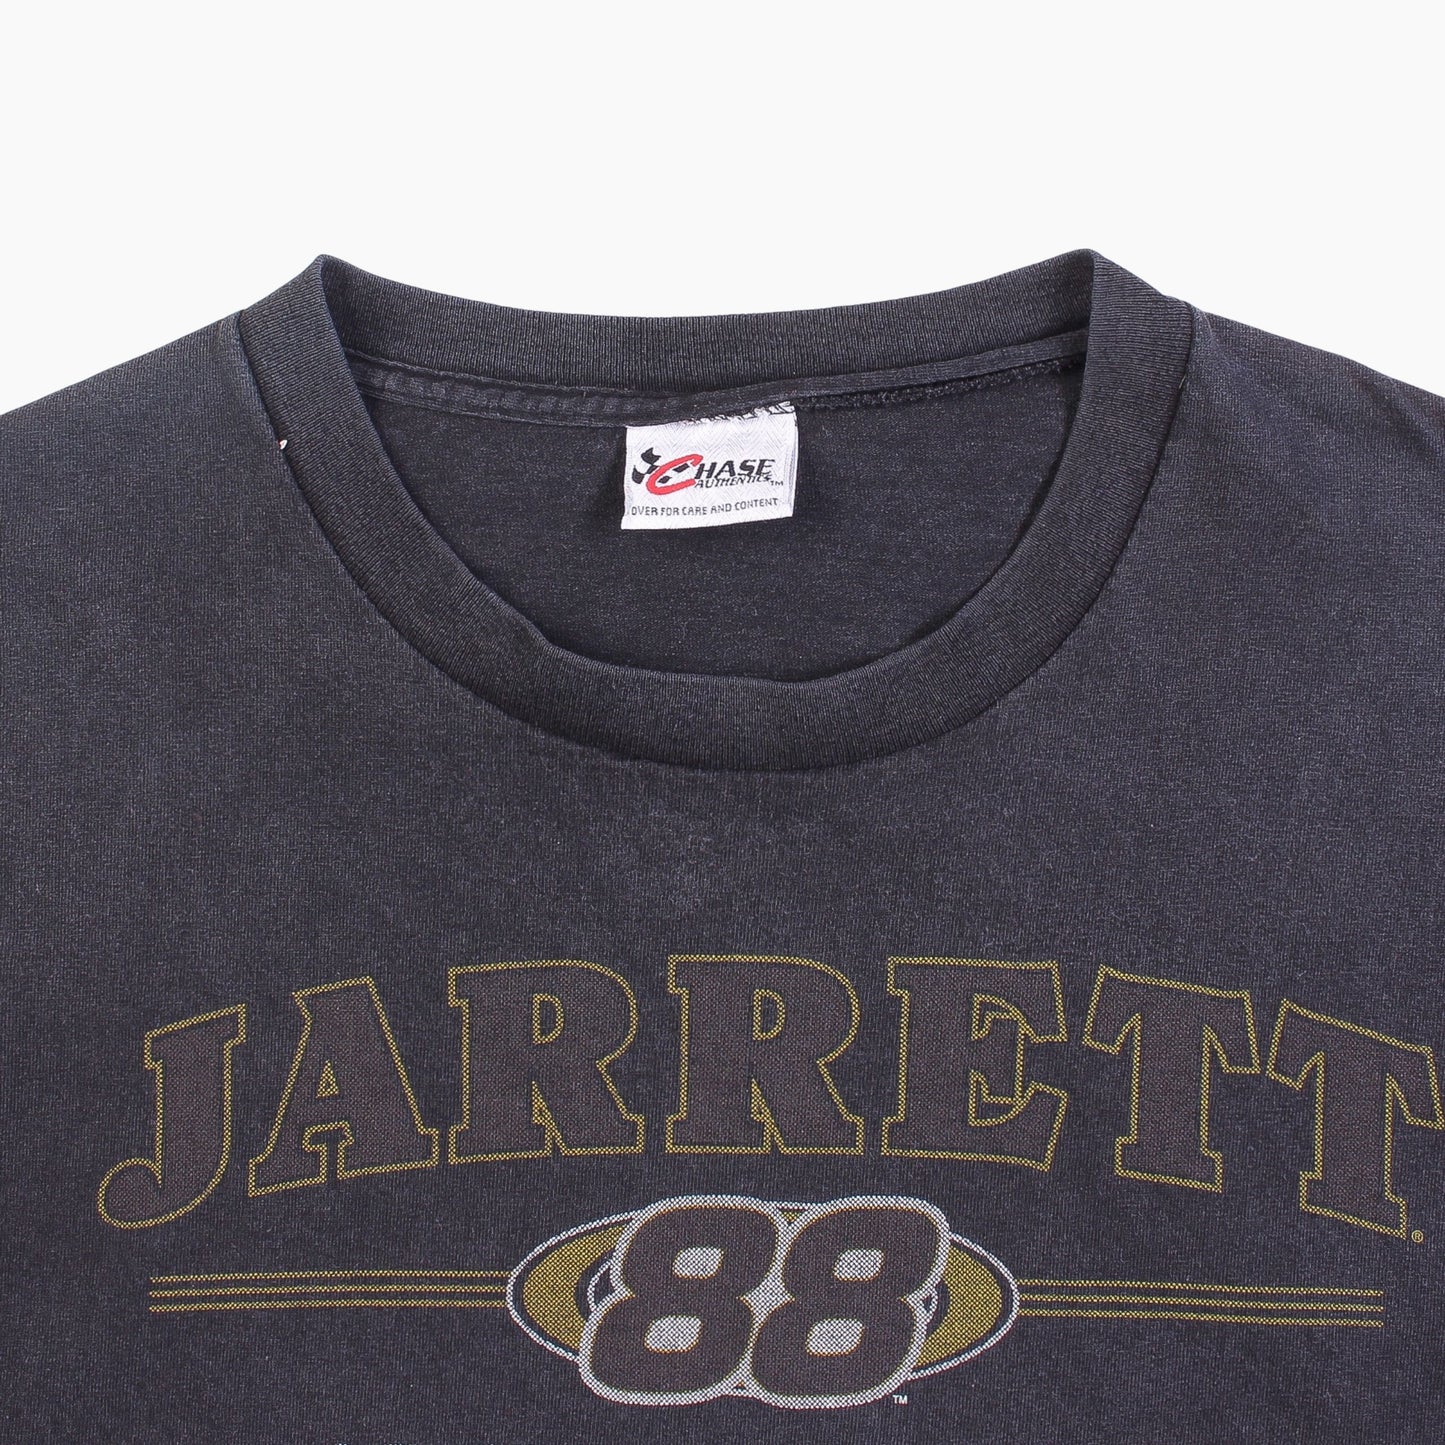 Vintage 'Jarrett' T-Shirt - American Madness